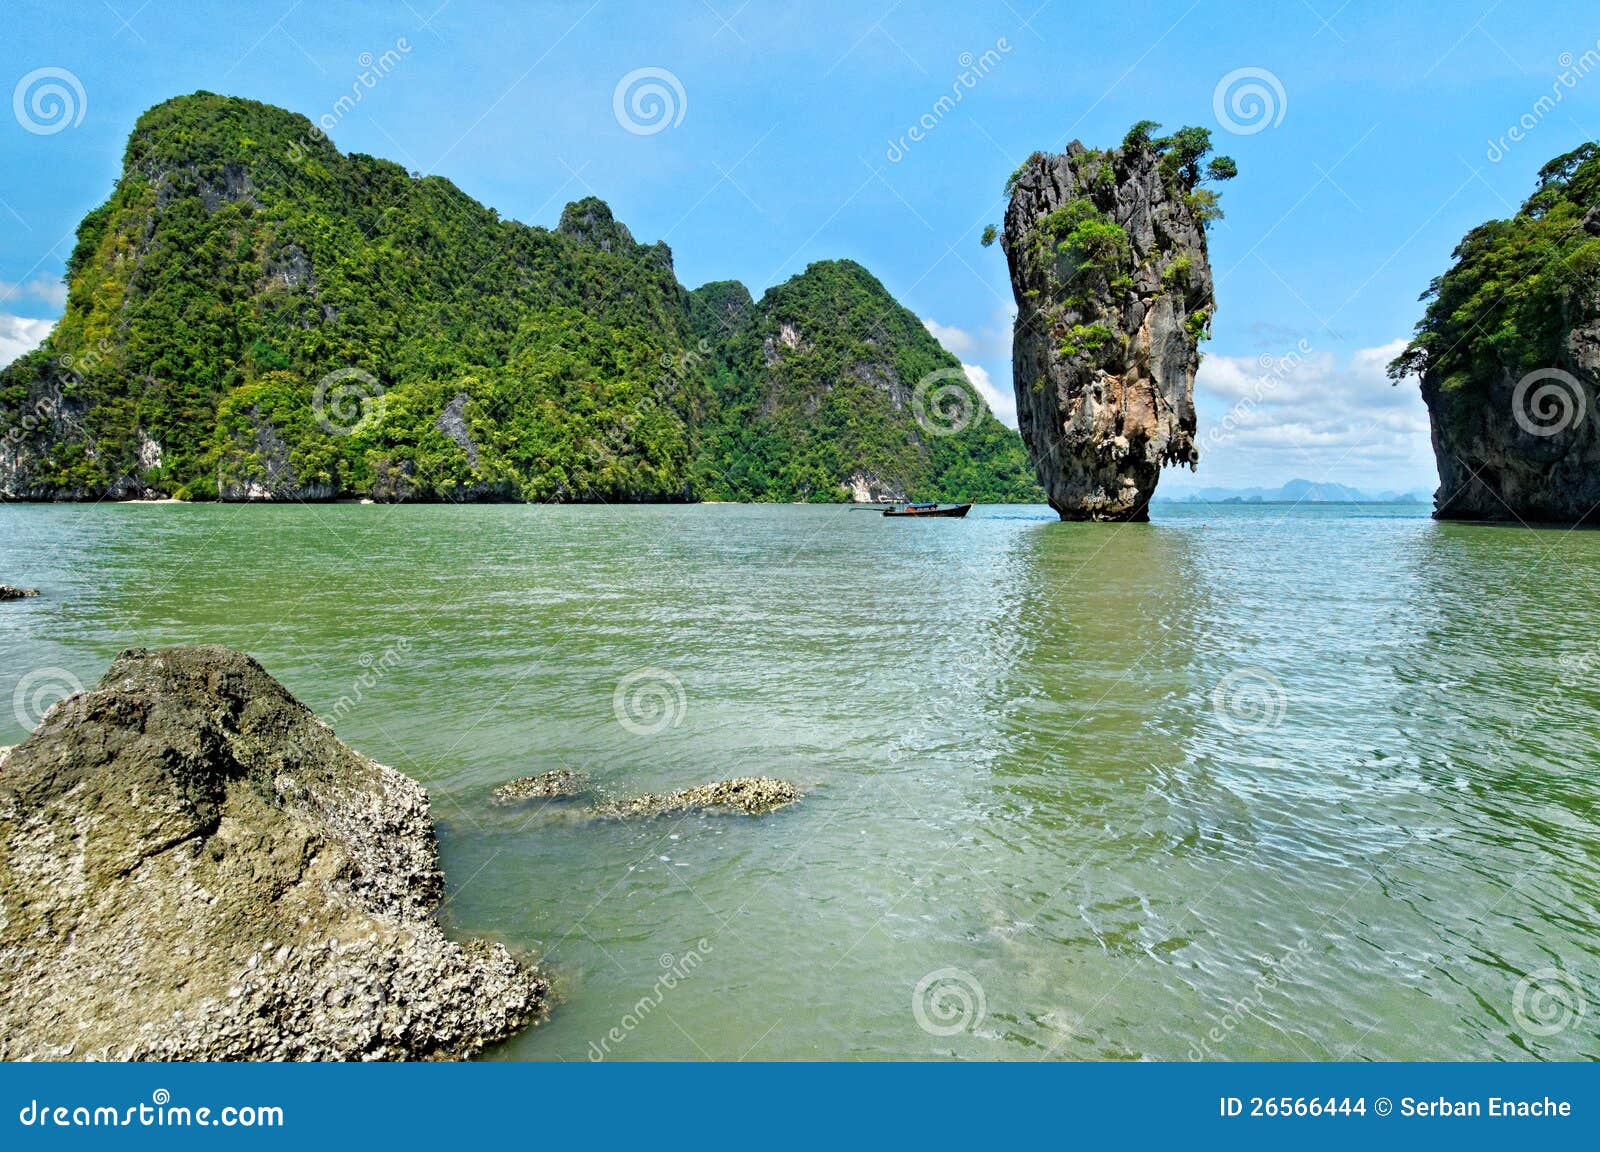 Phang Nga Bay scenic stock photo. Image of andaman, phang - 26566444